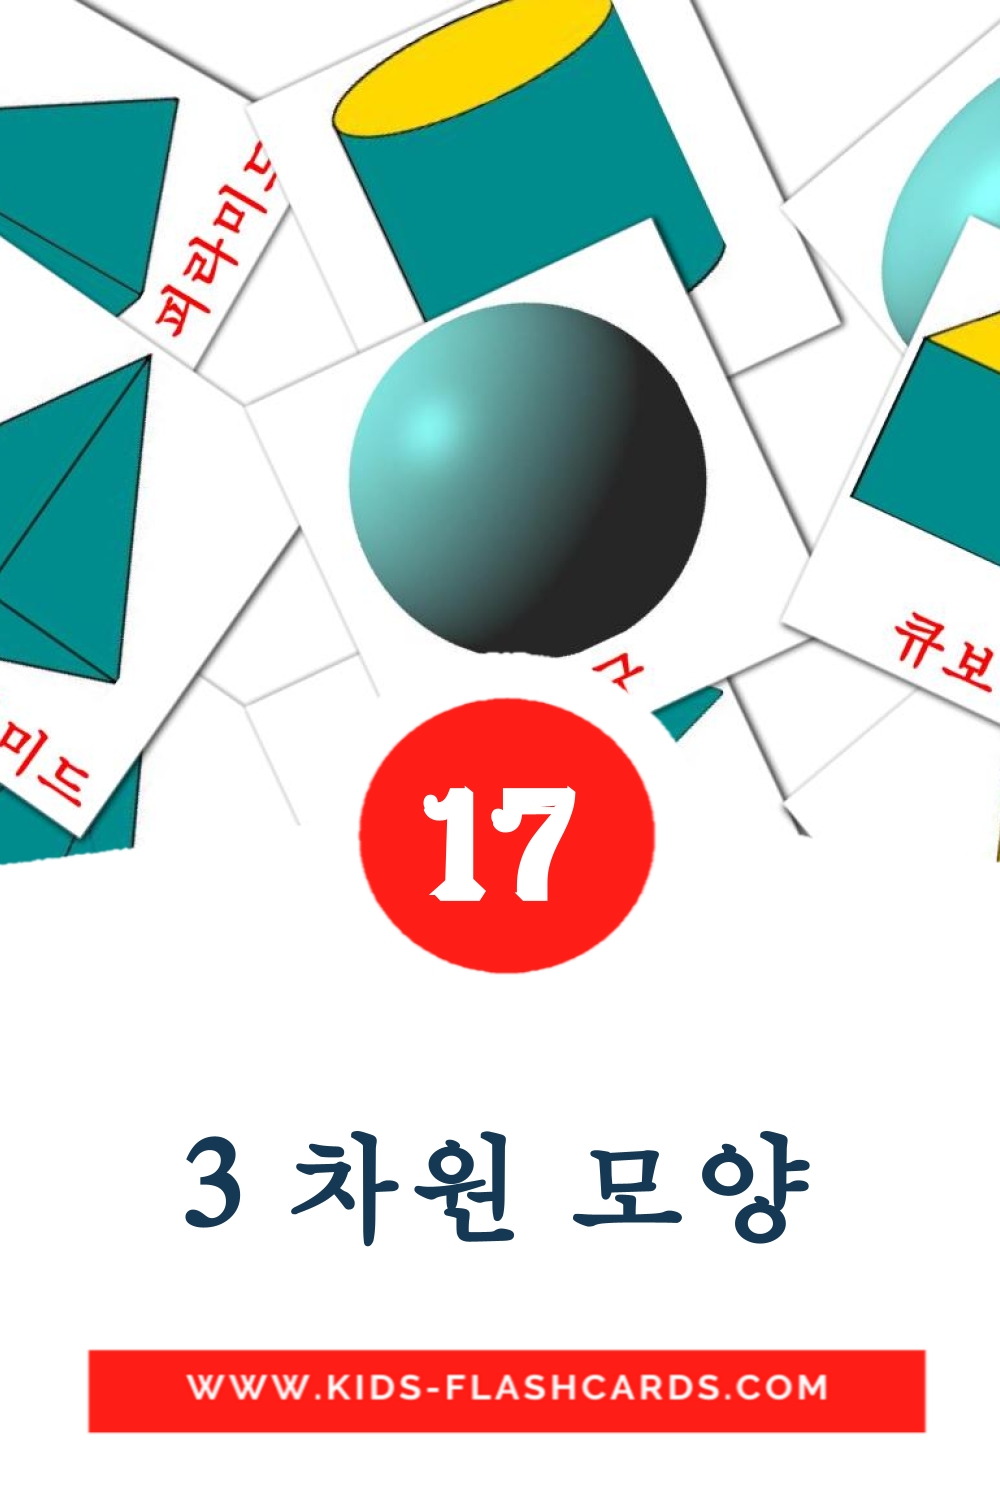 17 3 차원 모양 fotokaarten voor kleuters in het koreaanse